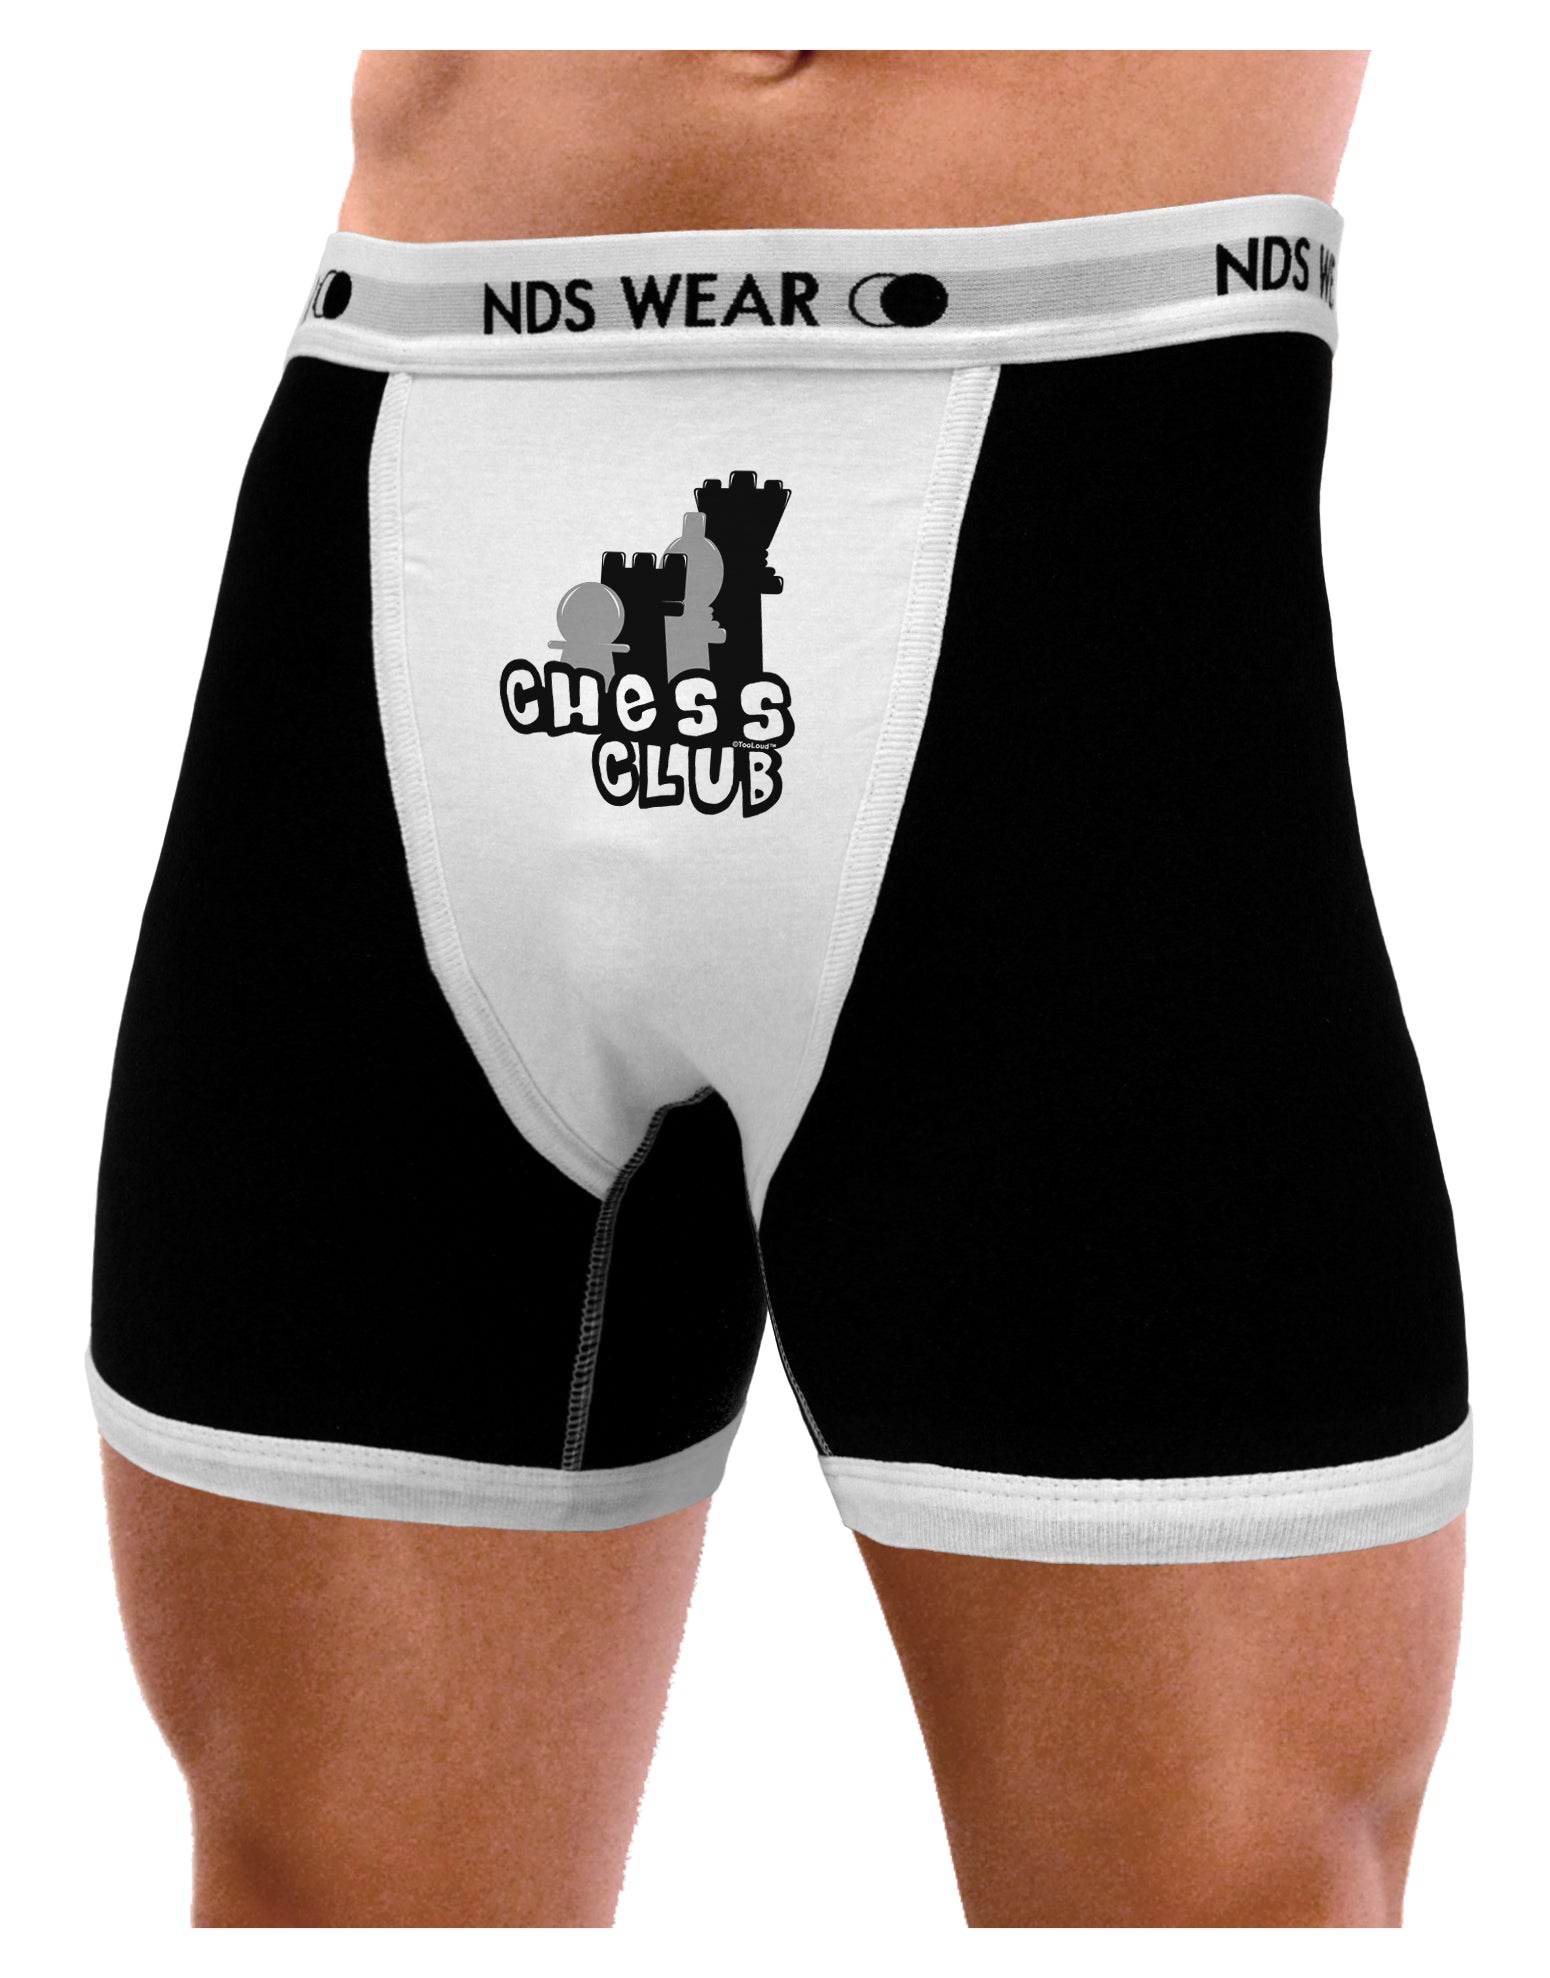 Equipo Men's Boxer Brief Underwear